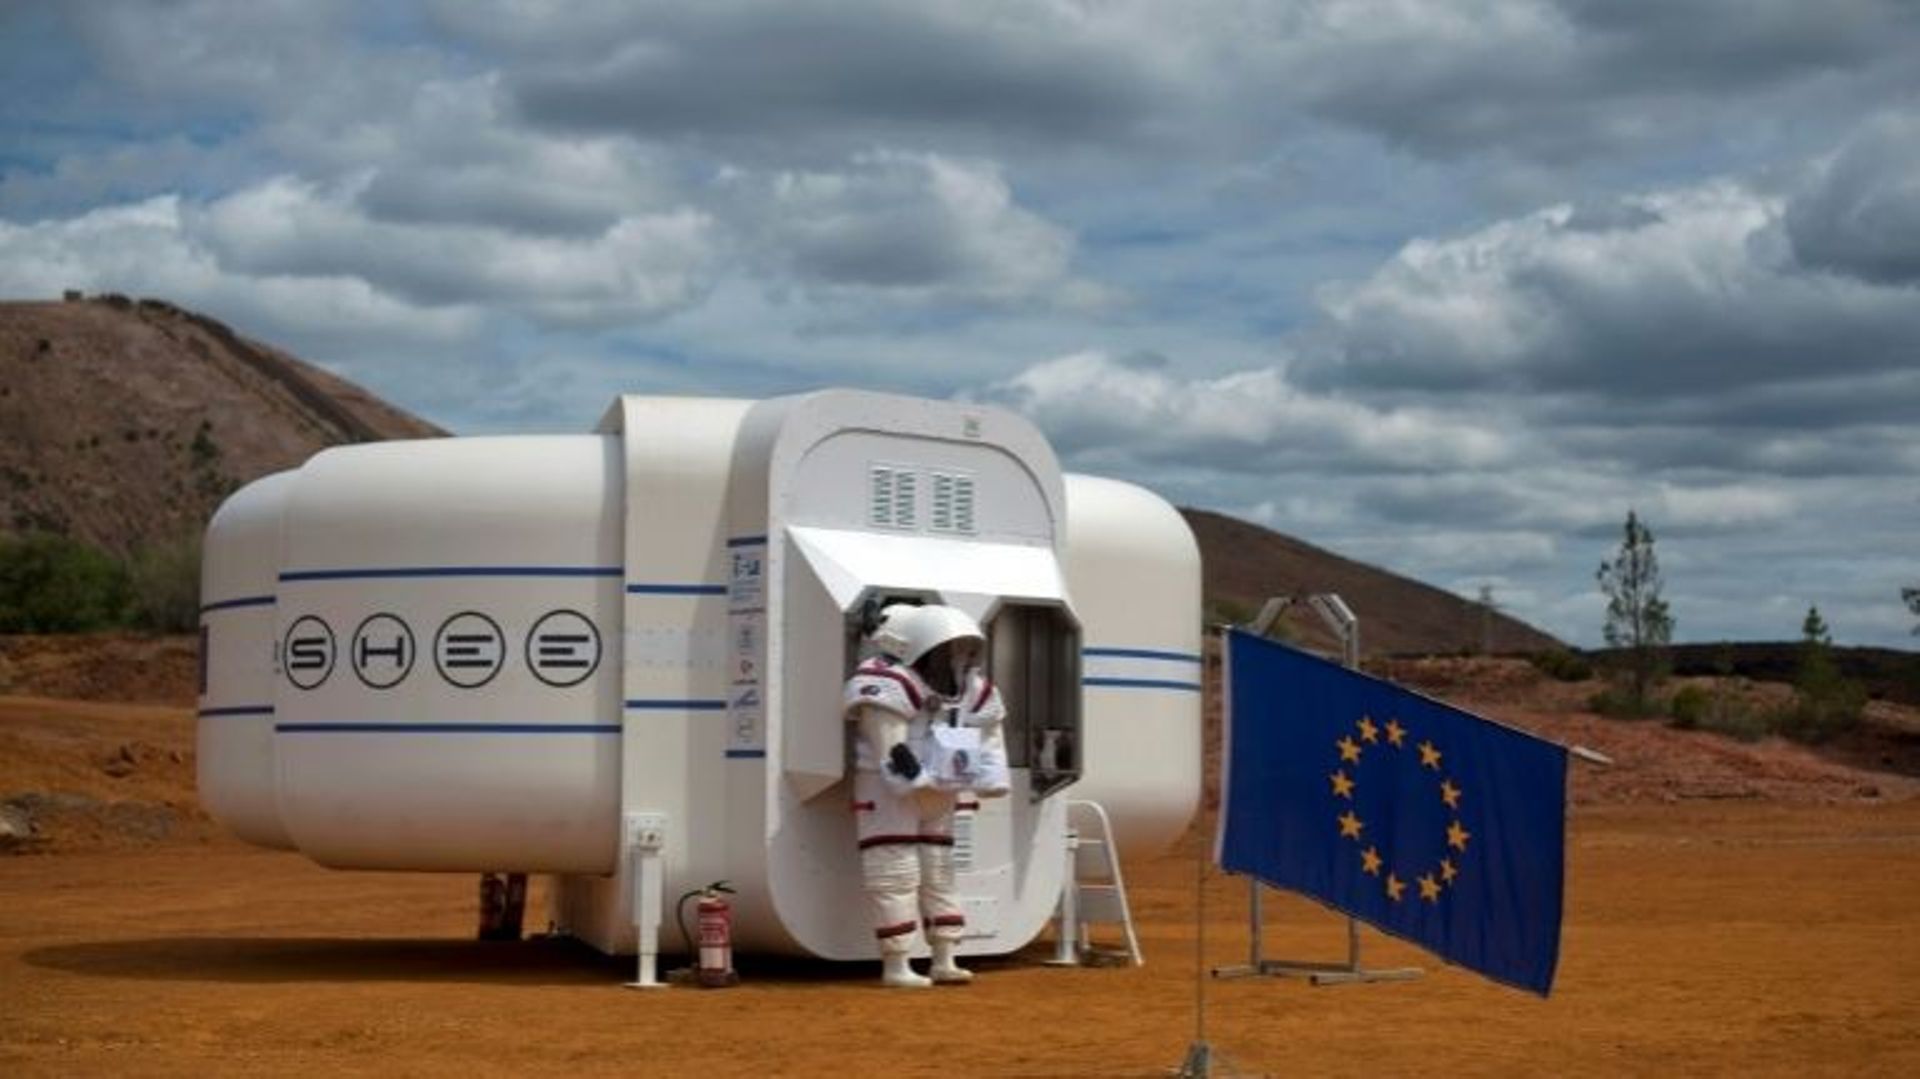 Le prototype d'habitations SHEE (Self-Deployable Habitat for Extreme Environments), lors d'une simulation martienne du projet Moonwalk à Minas de Riotinto, en Espagne, le 22 avril 2016.